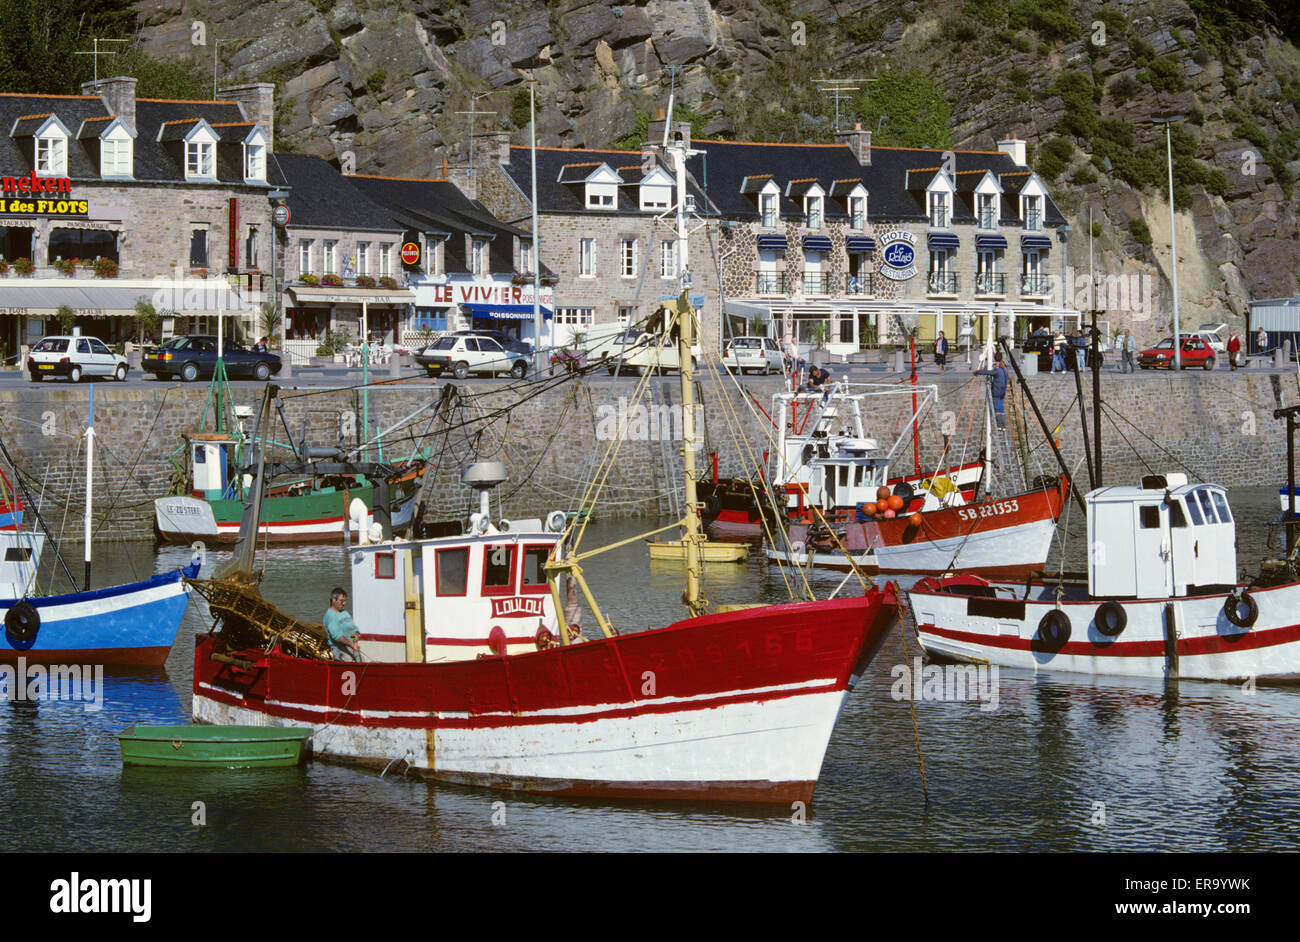 Bateaux de pêche au port, Erquy, Côtes d'Armor, Bretagne, France, Europe Banque D'Images